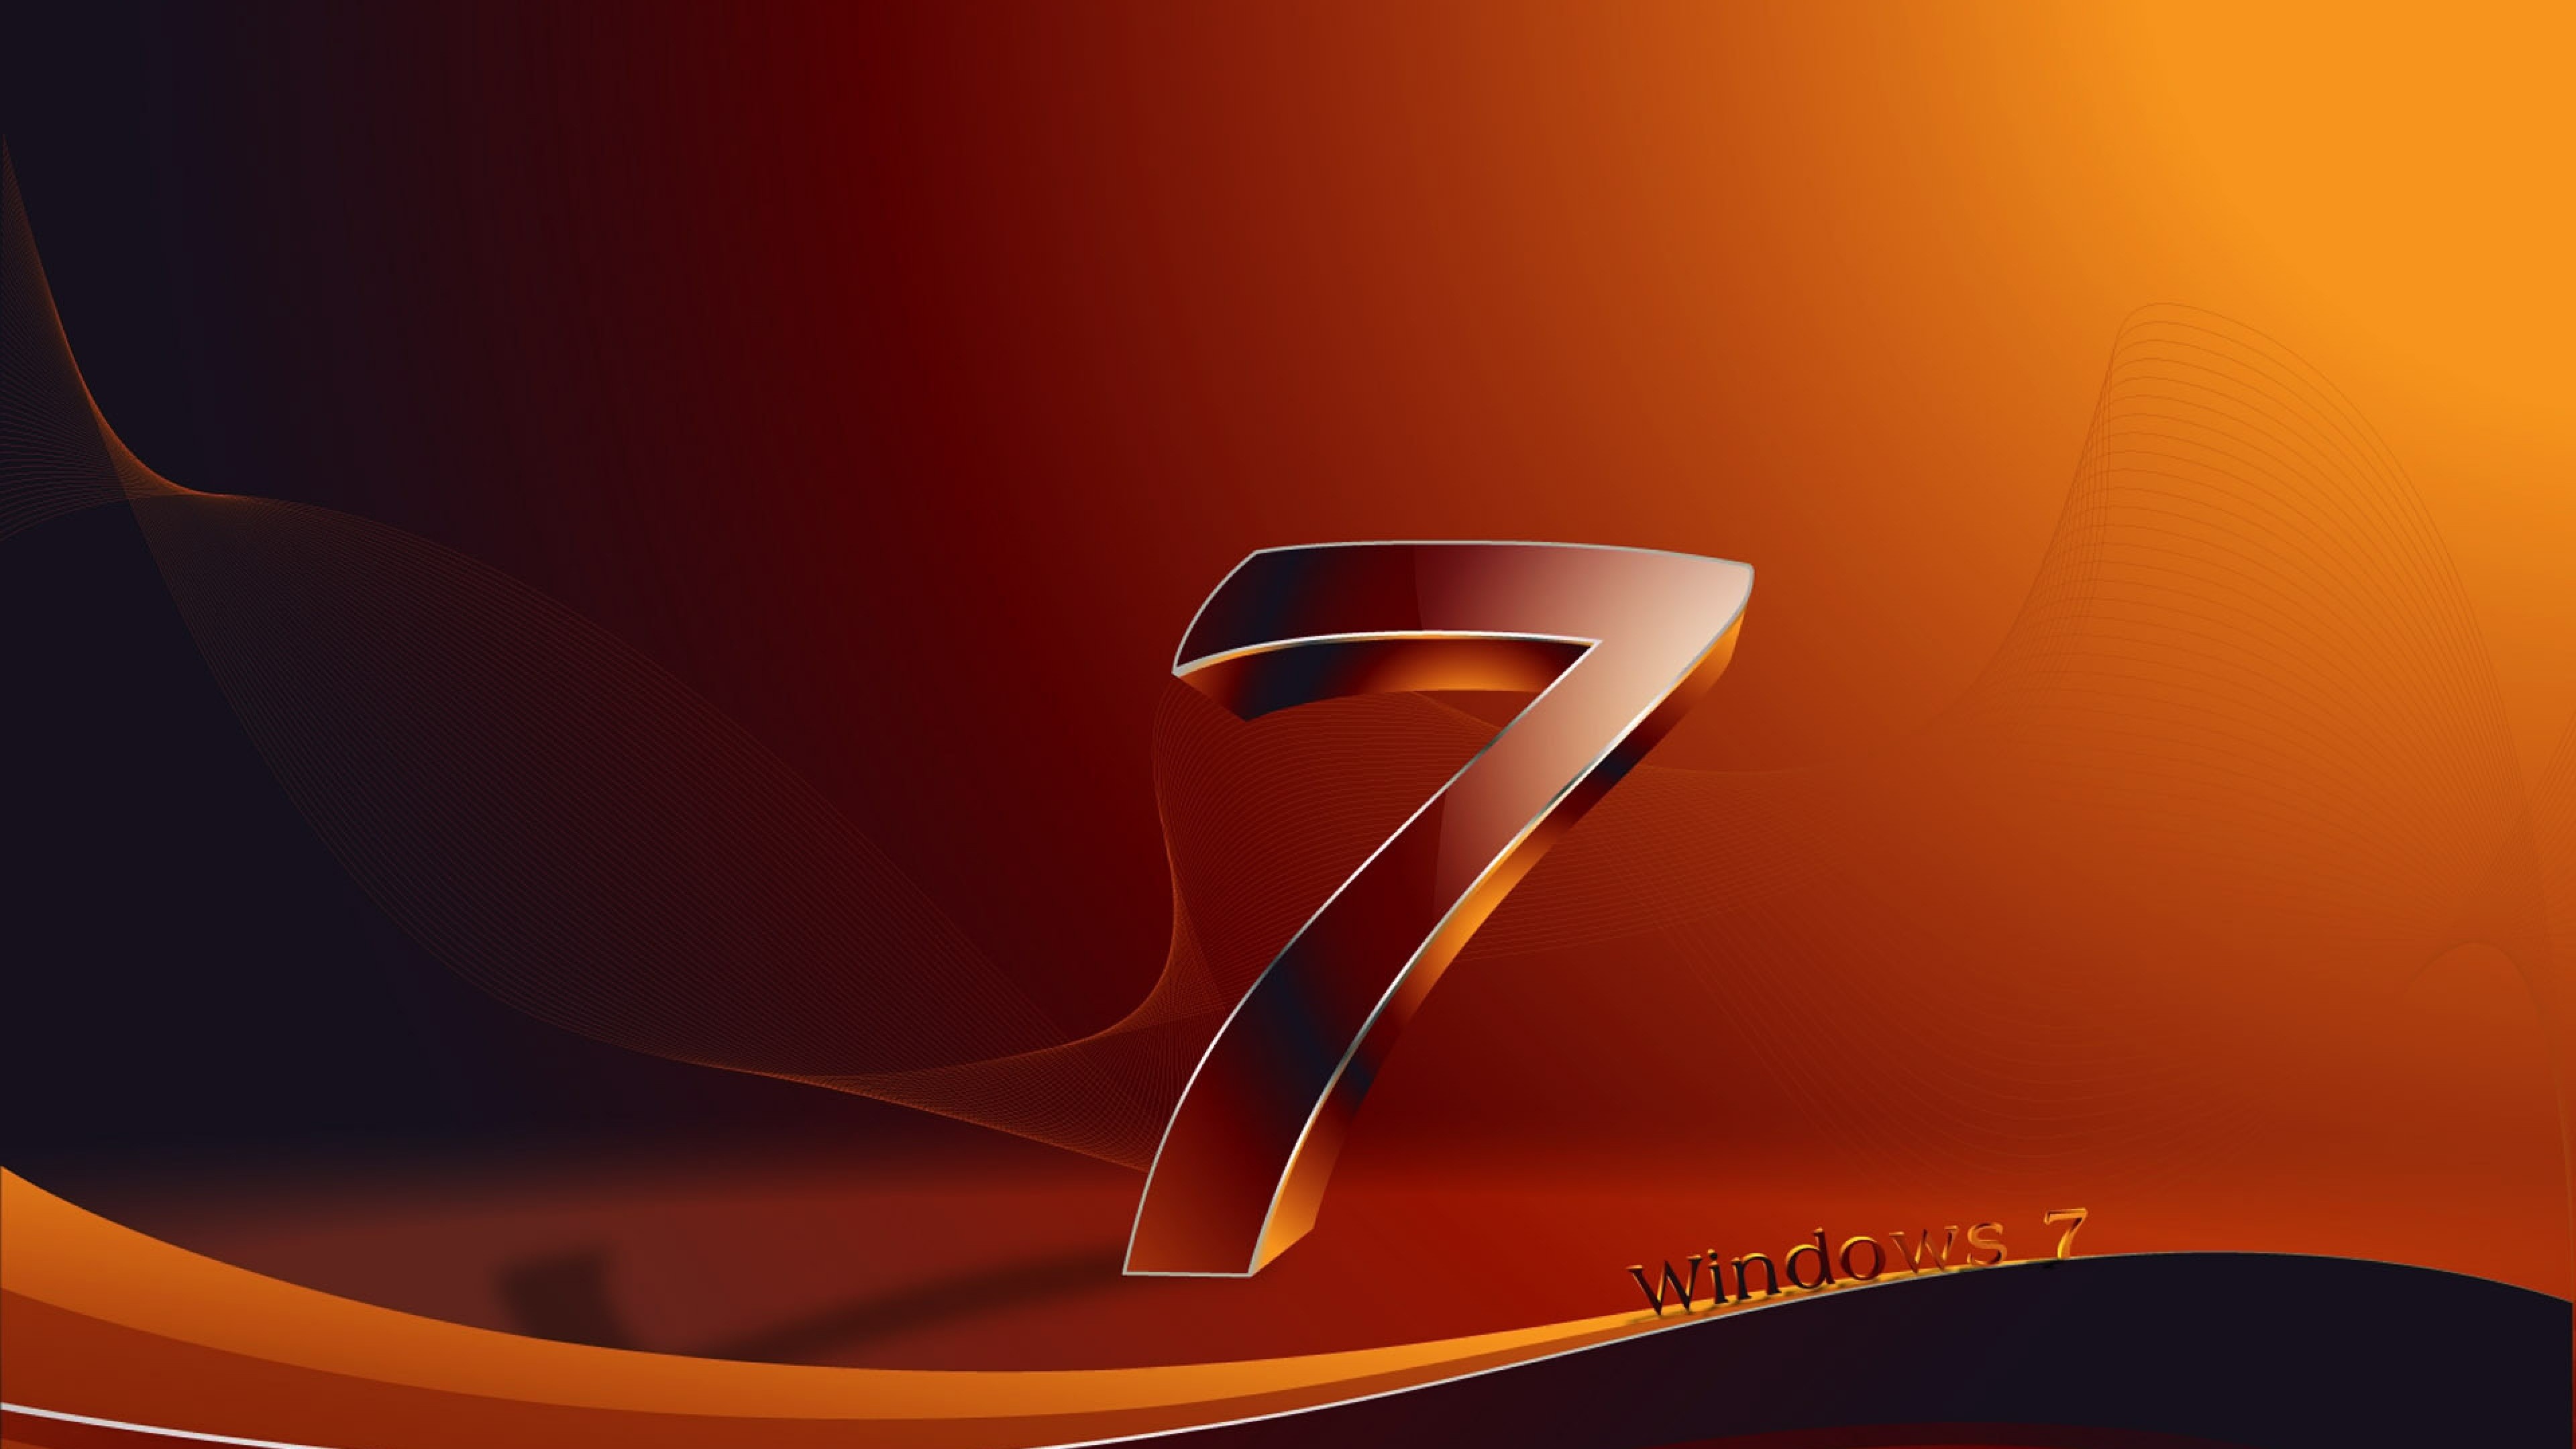 3840x2160 Download Wallpaper  Windows 7, Os, Orange, Black 4K Ultra .